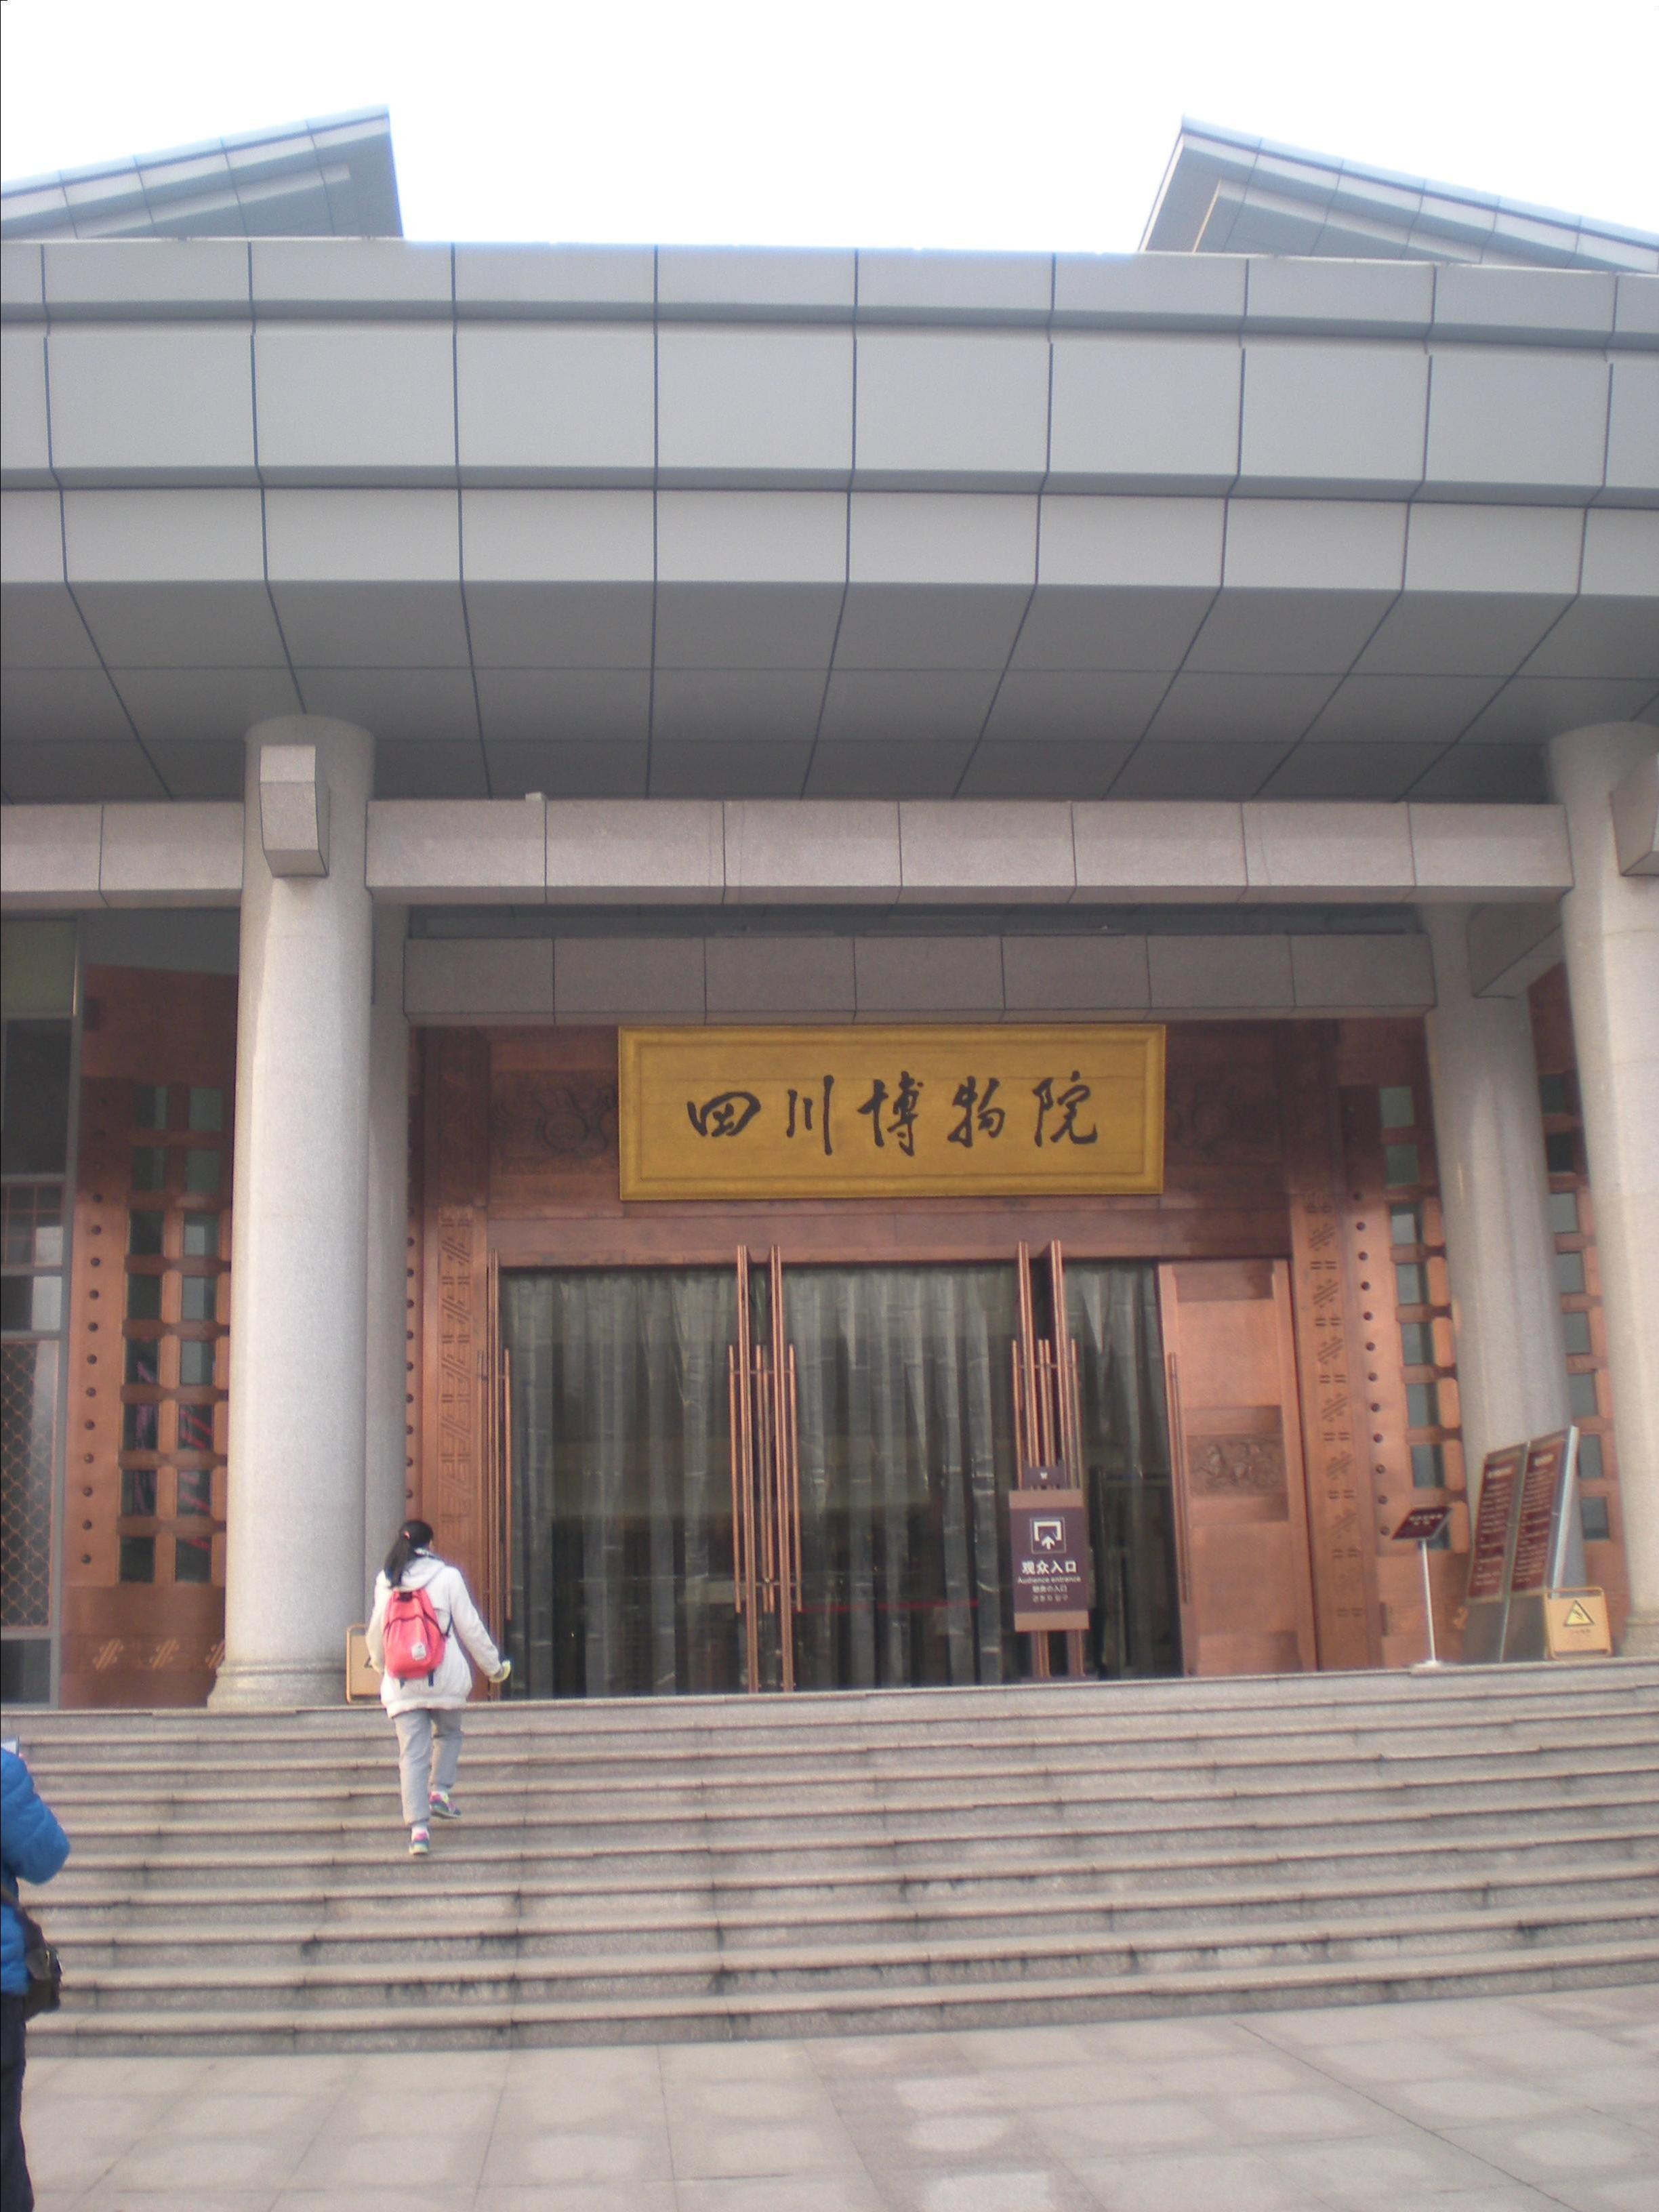 虽然没有四大博物馆有名气,但是应该是四川最好的官方博物馆